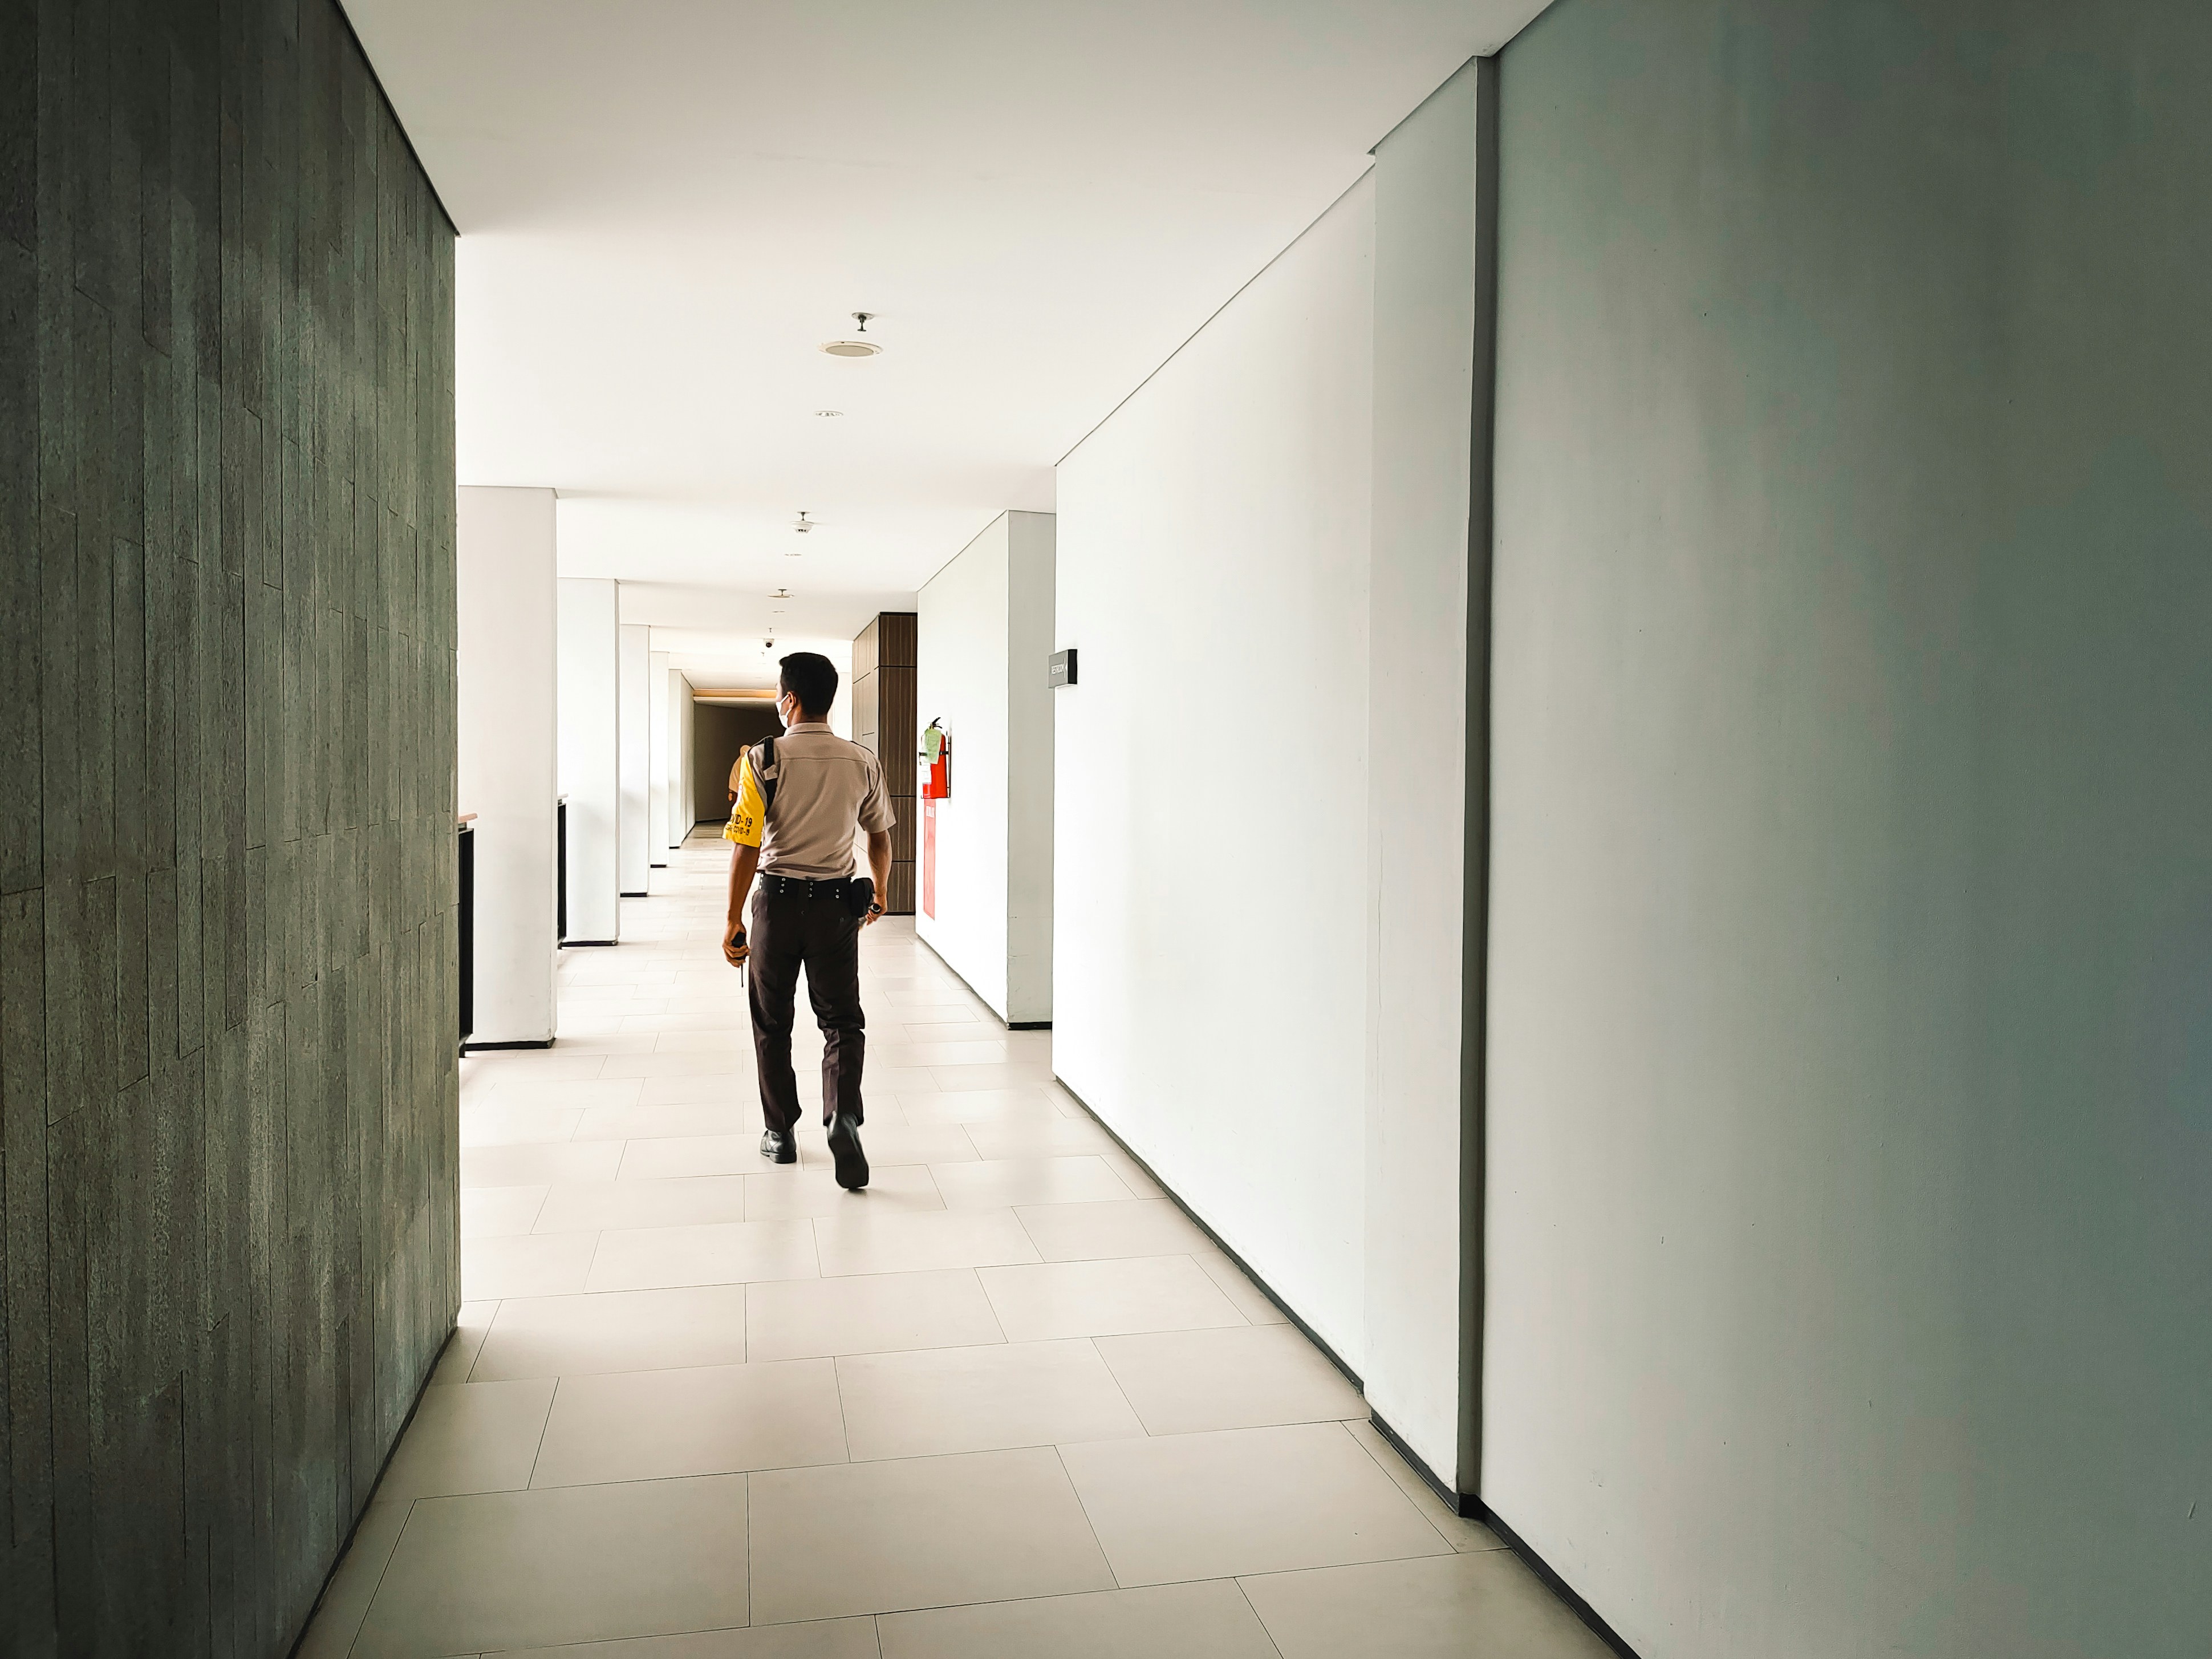 A security guard walking a hallway | Source: Pexels